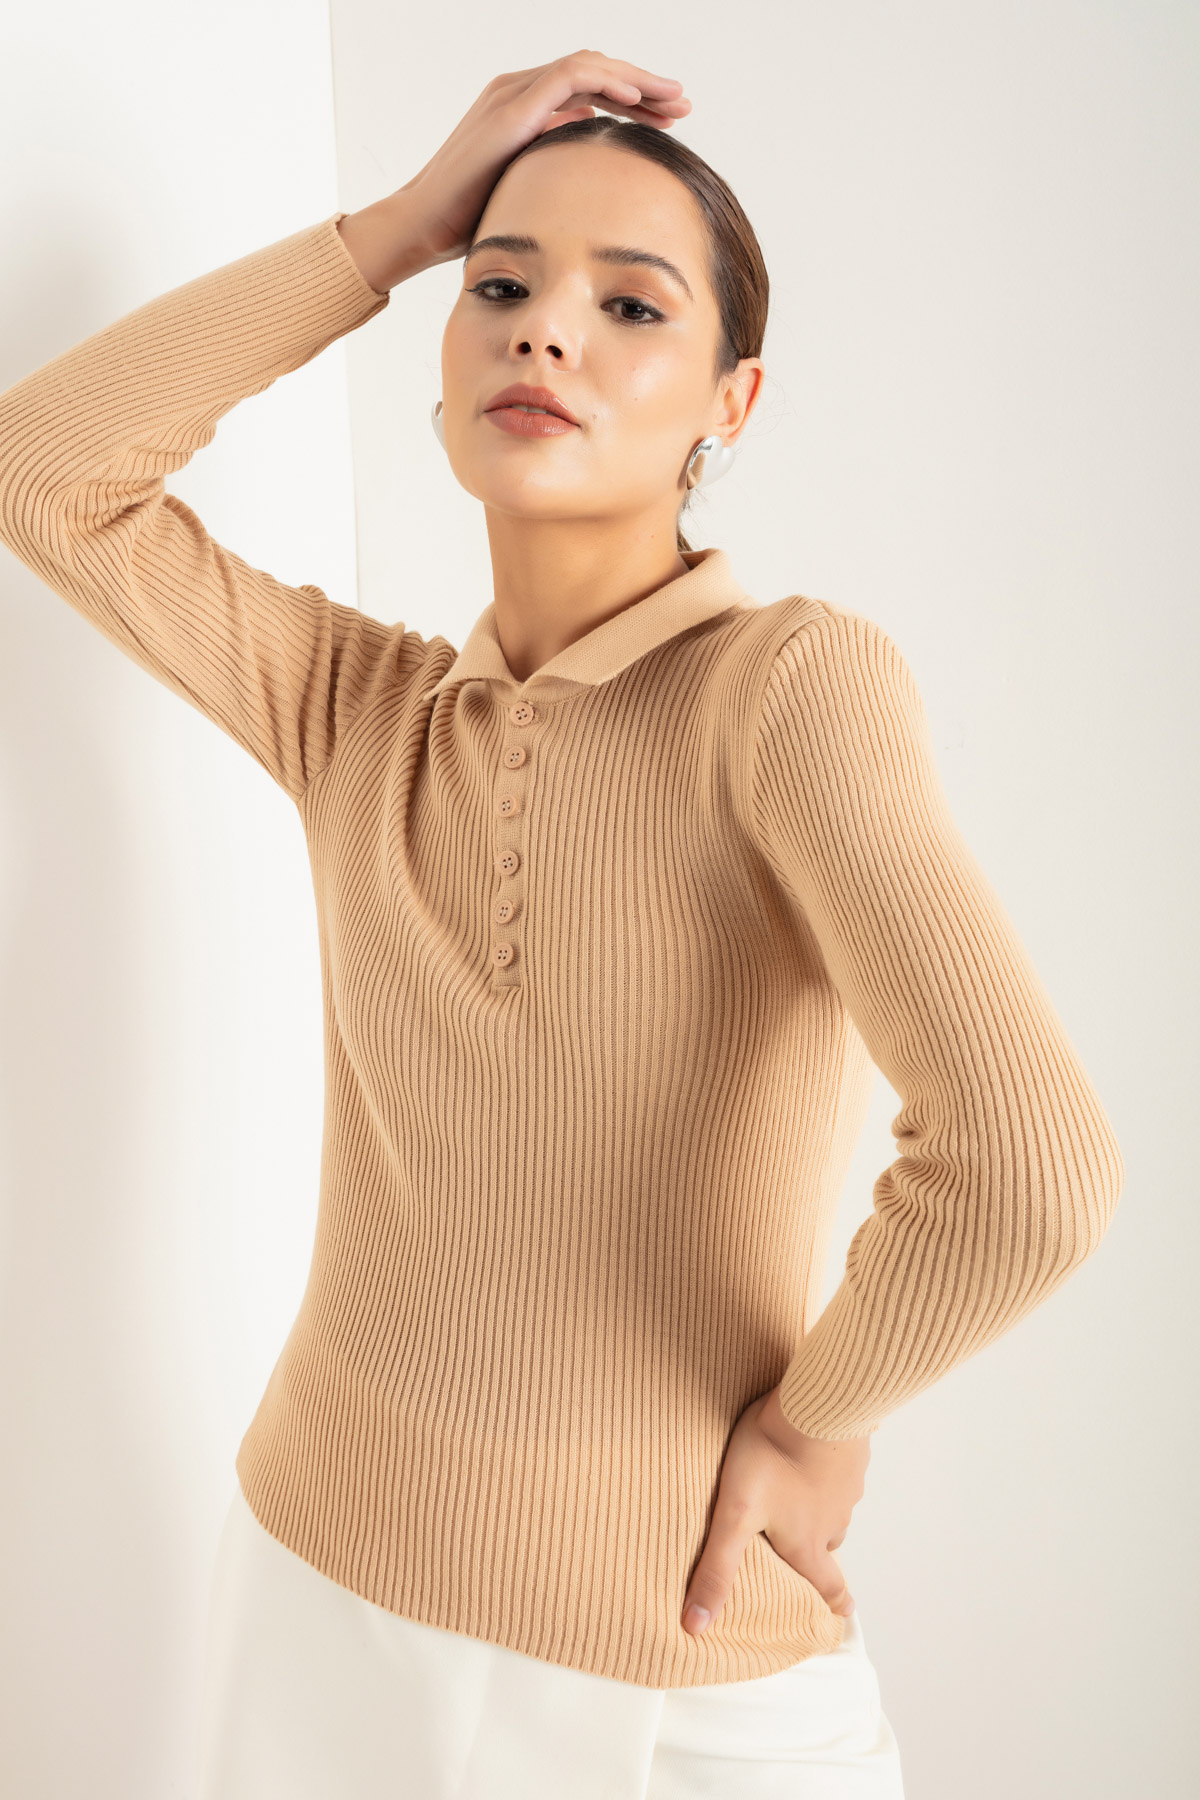 Women's Tan Polo Neck Knitwear Sweater